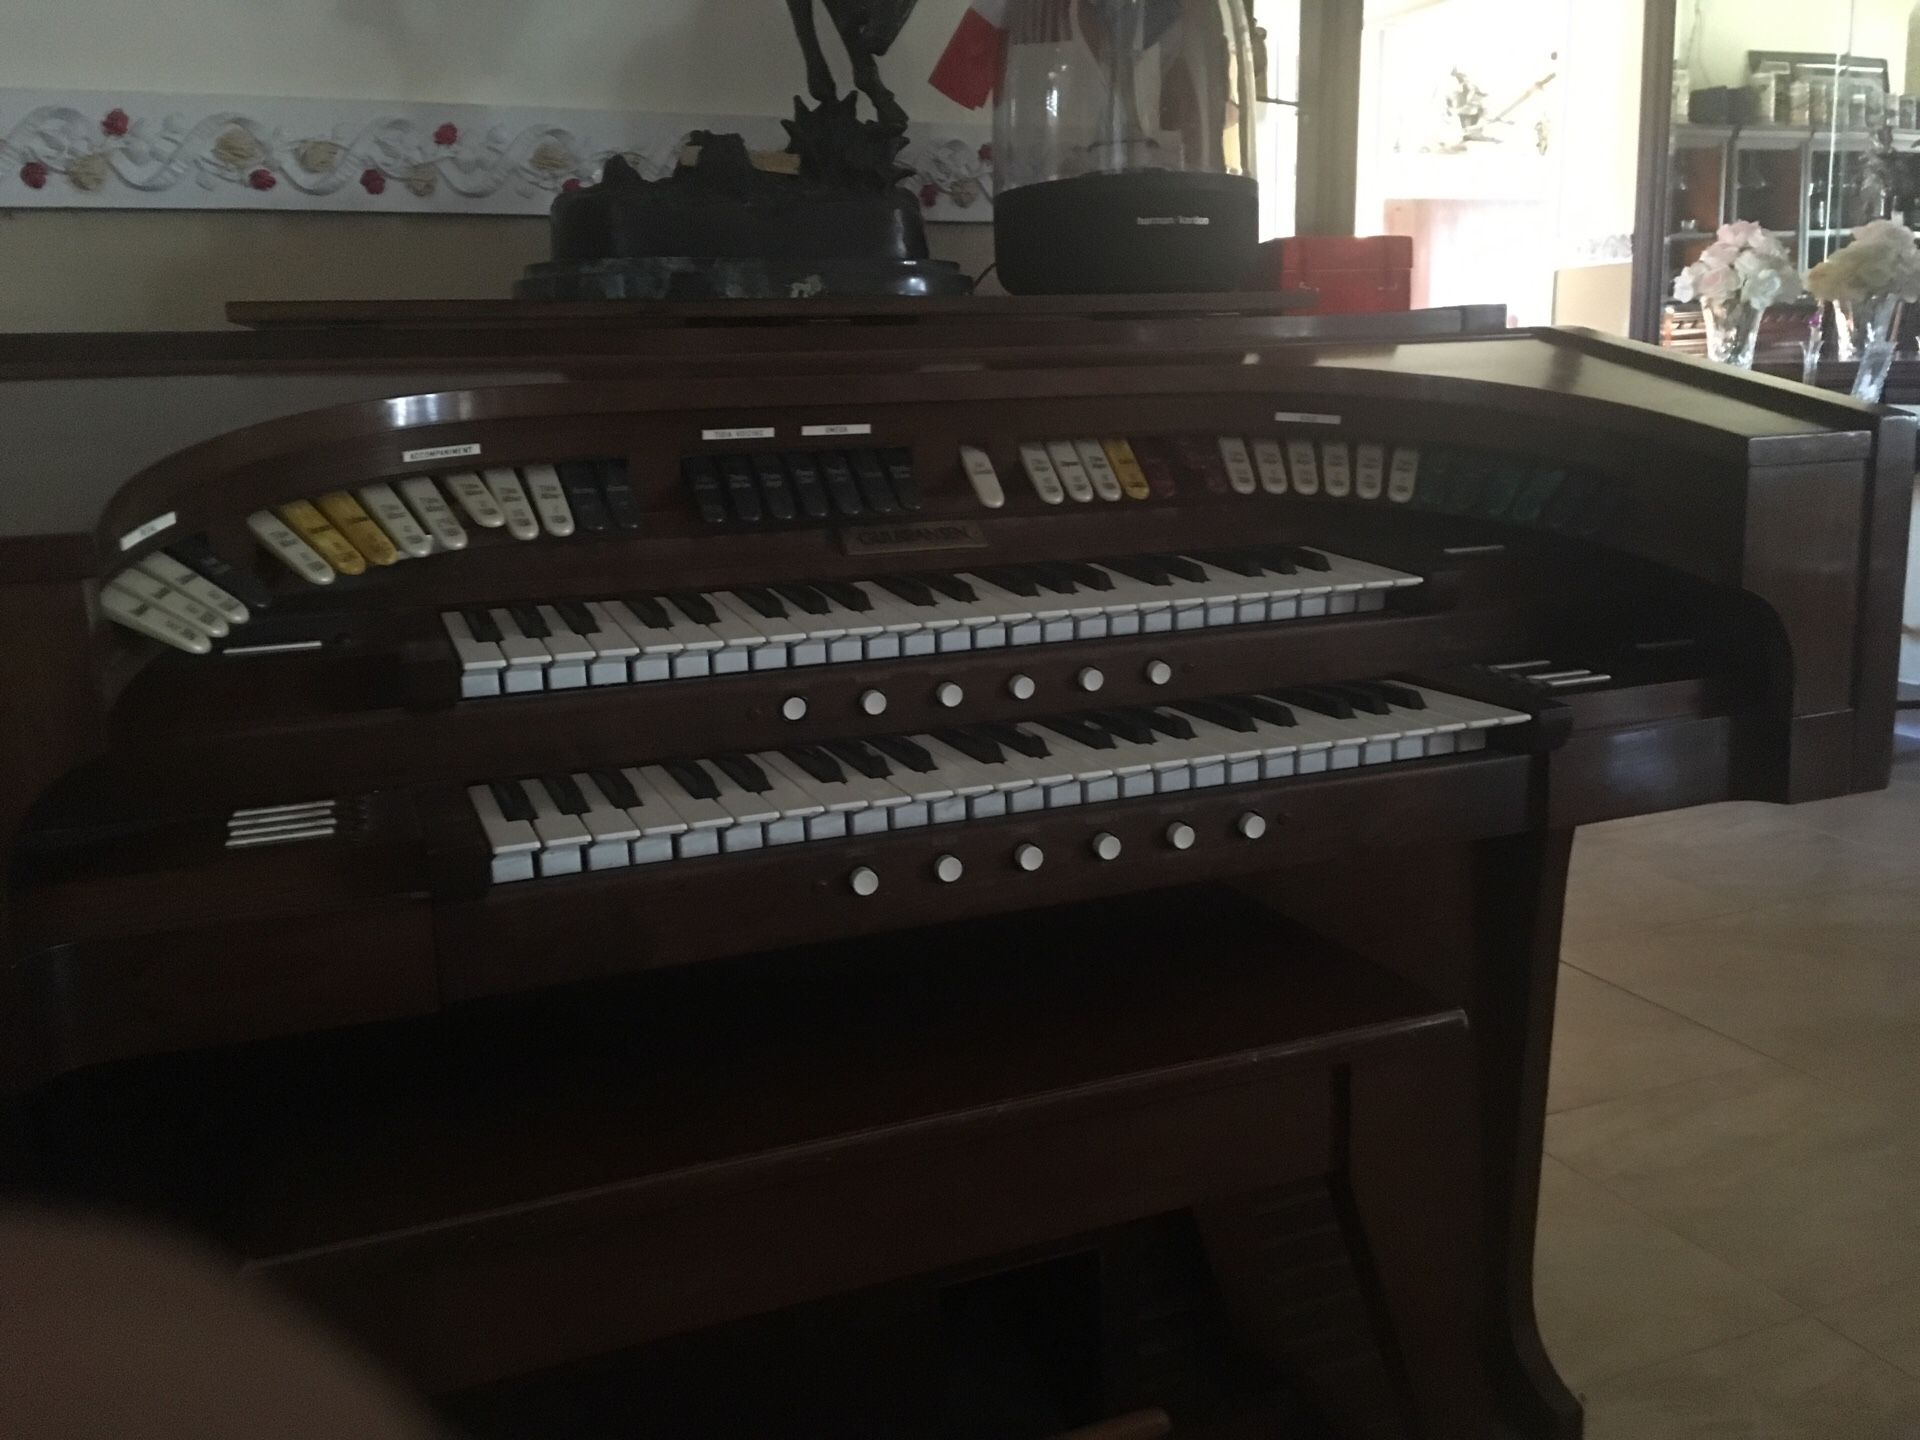 Beautiful Organ